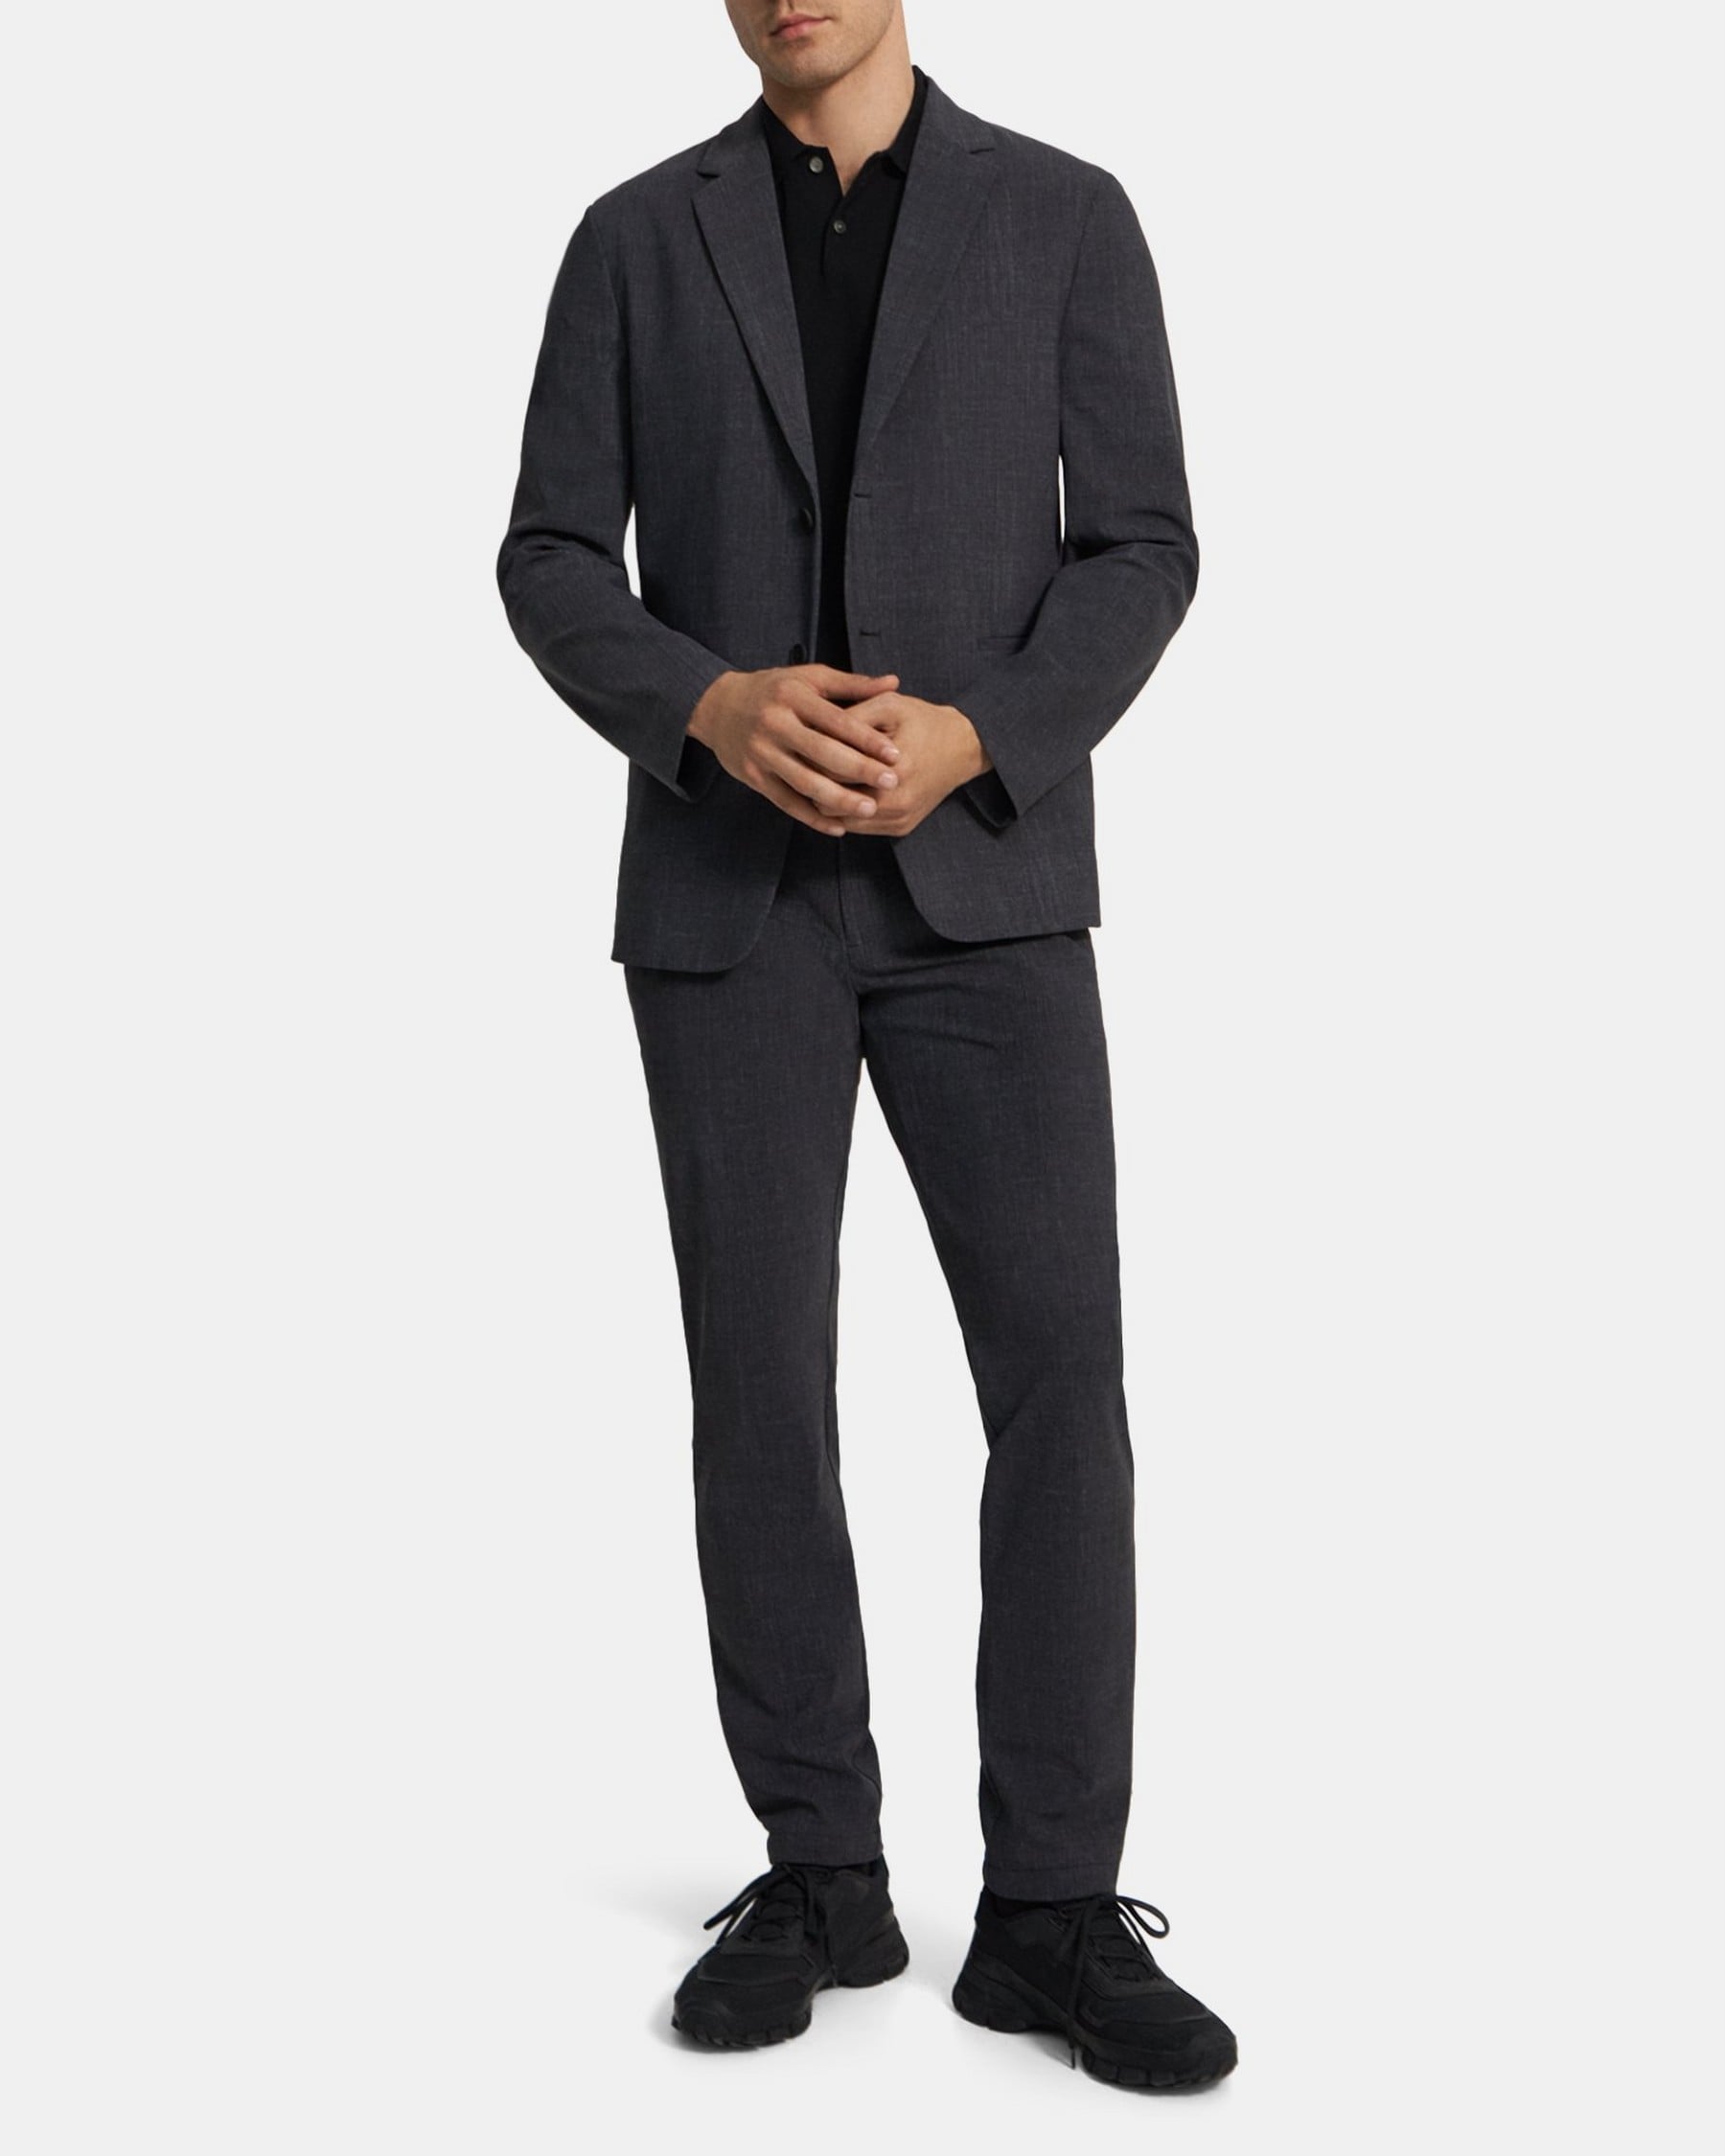 띠어리 Theory Unstructured Suit Jacket in Performance Knit,GREY MELANGE